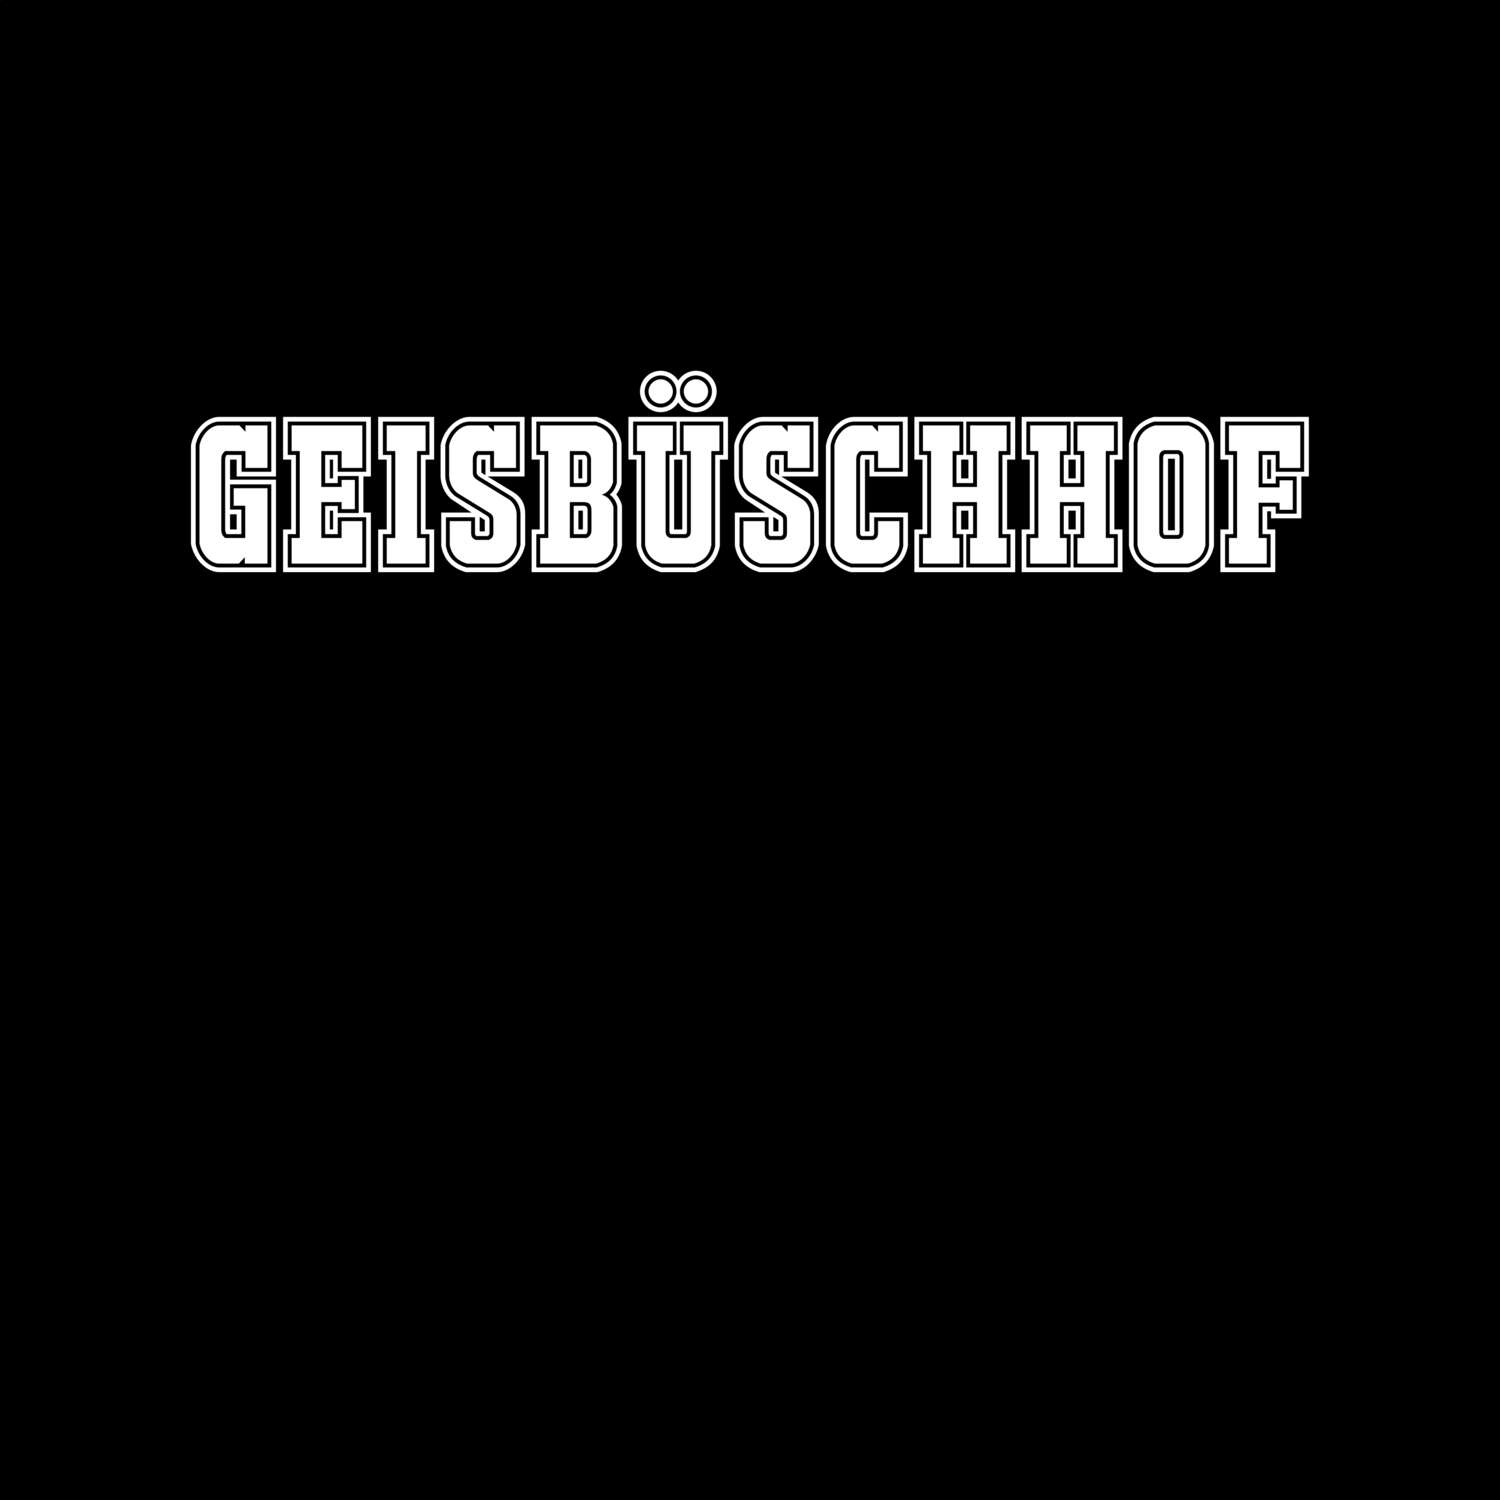 Geisbüschhof T-Shirt »Classic«